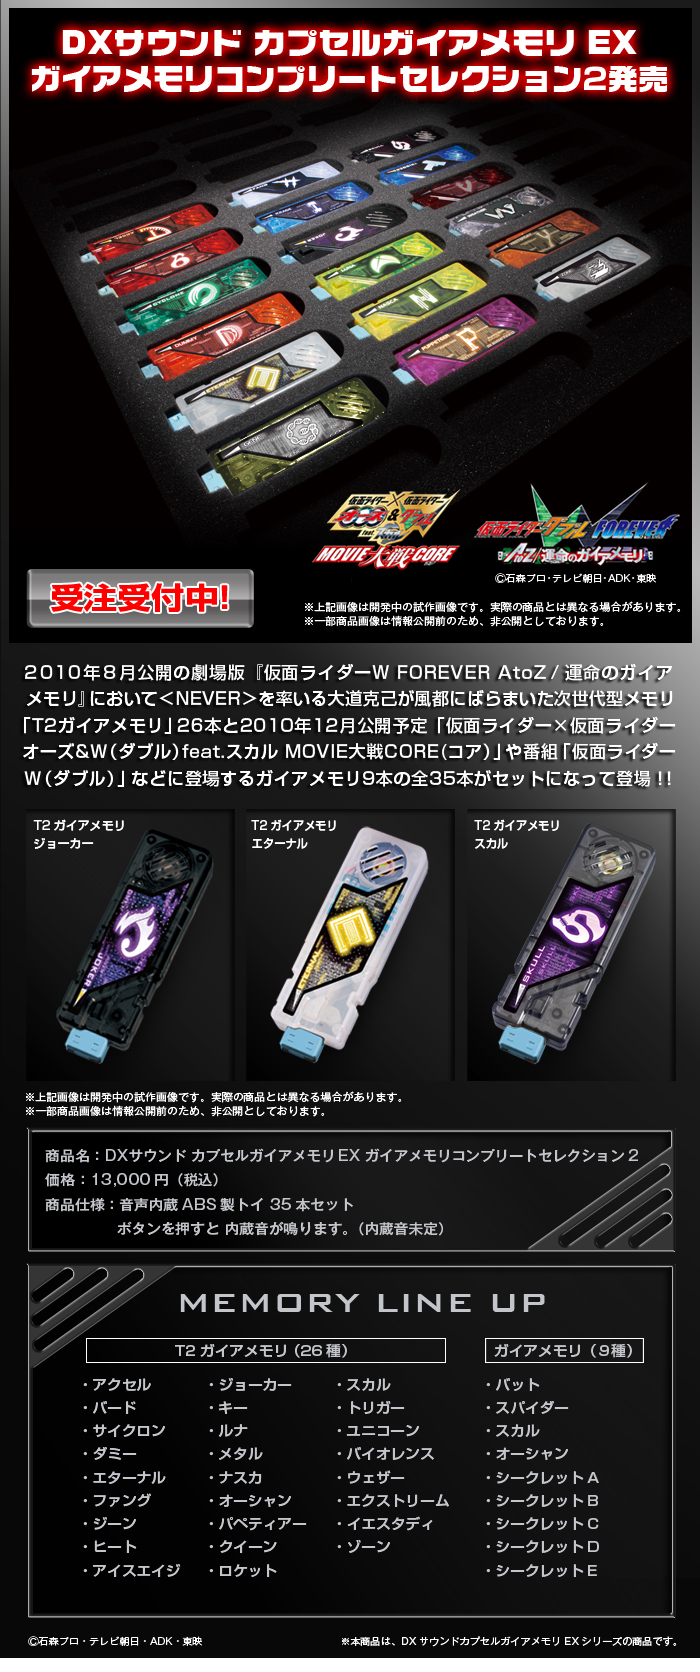 仮面ライダーダブル DXサウンドガイアメモリEX セレクション02 - 通販 